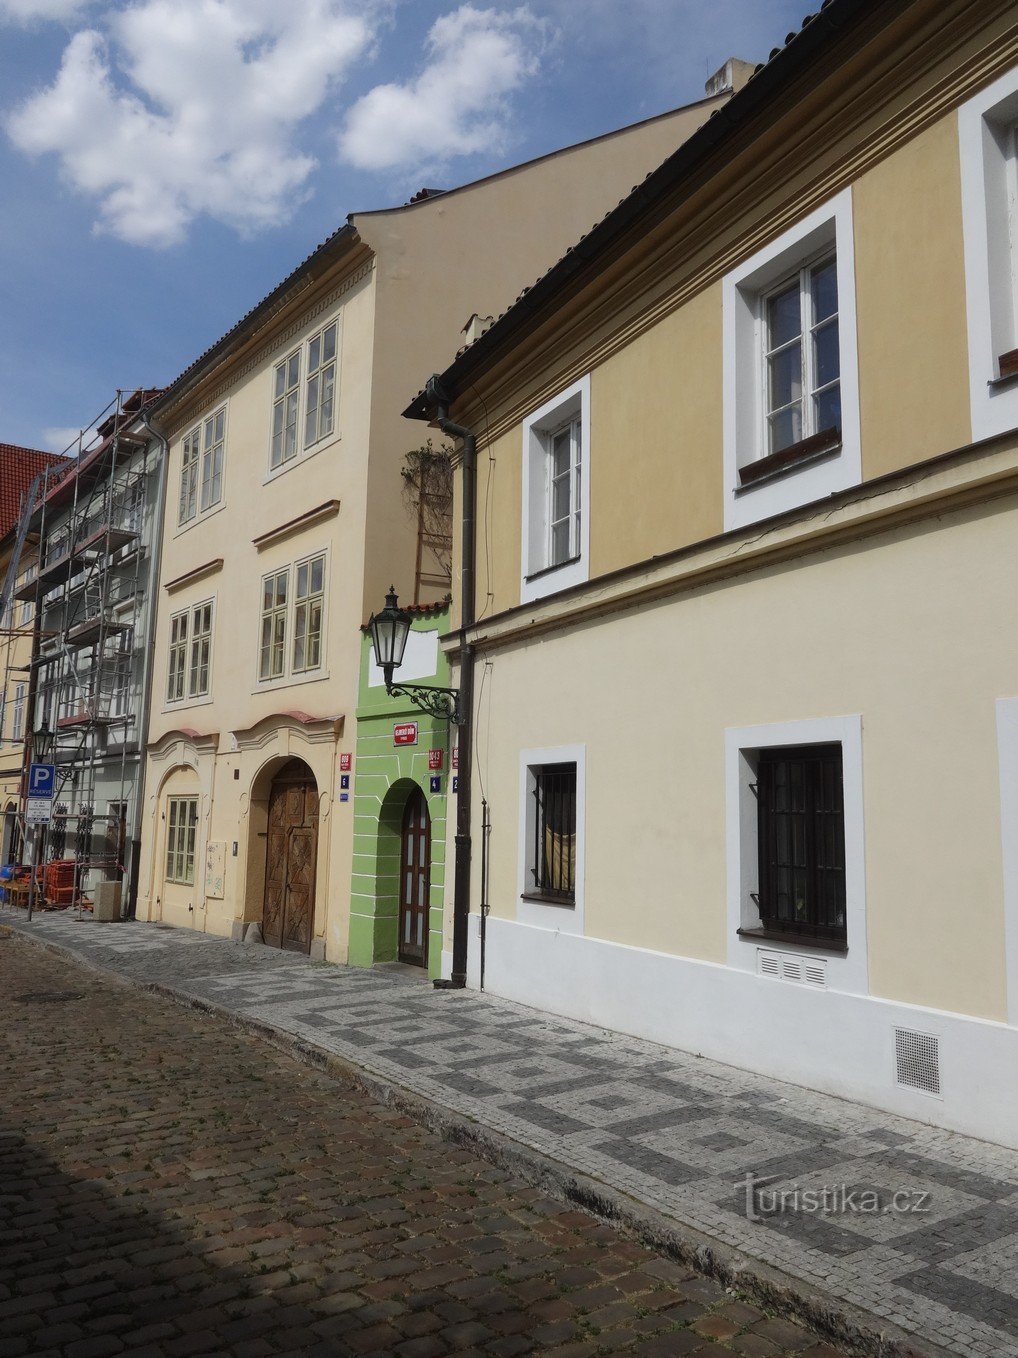 Praga i prawdopodobnie najwęższy dom w Czechach